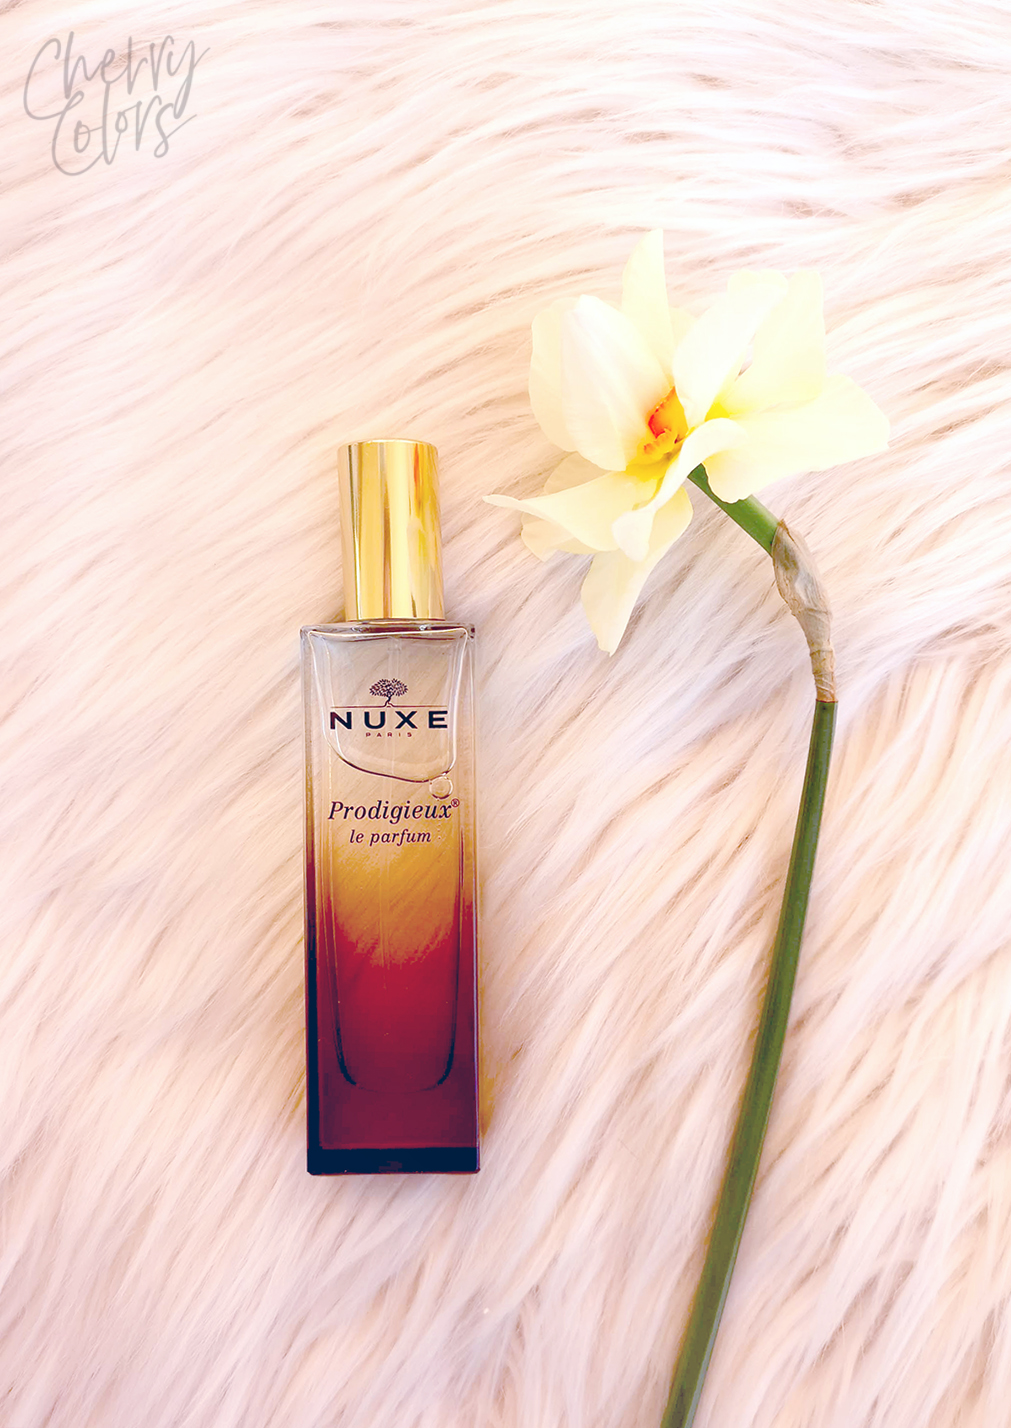 NUXE Prodigieux Eau De Parfum - Cherry Colors - Cosmetics Heaven! | Eau de Parfum